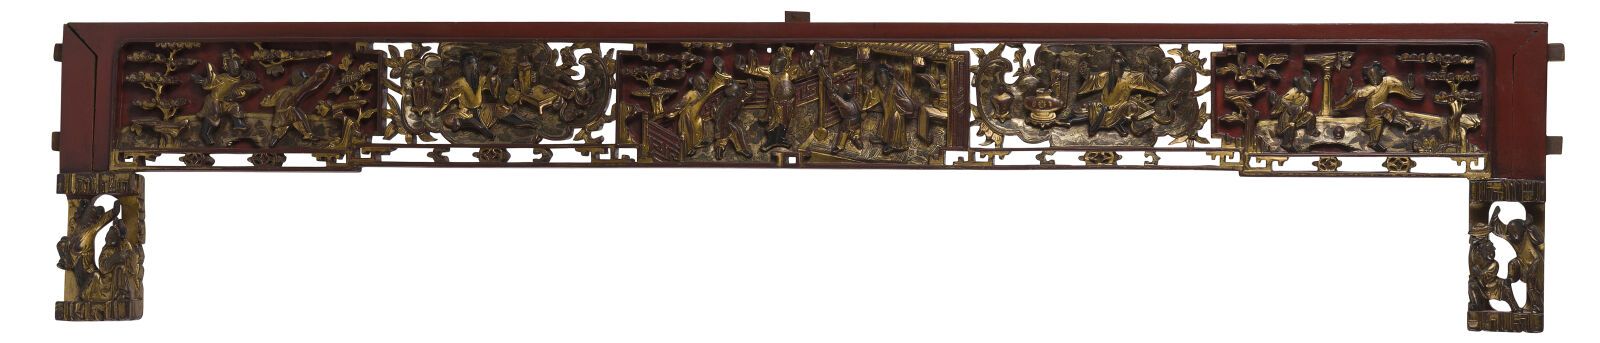 Null 五件套金红漆木板或元素
中国，宁波，19世纪末/20世纪初
有雕刻的人物动画场景的装饰